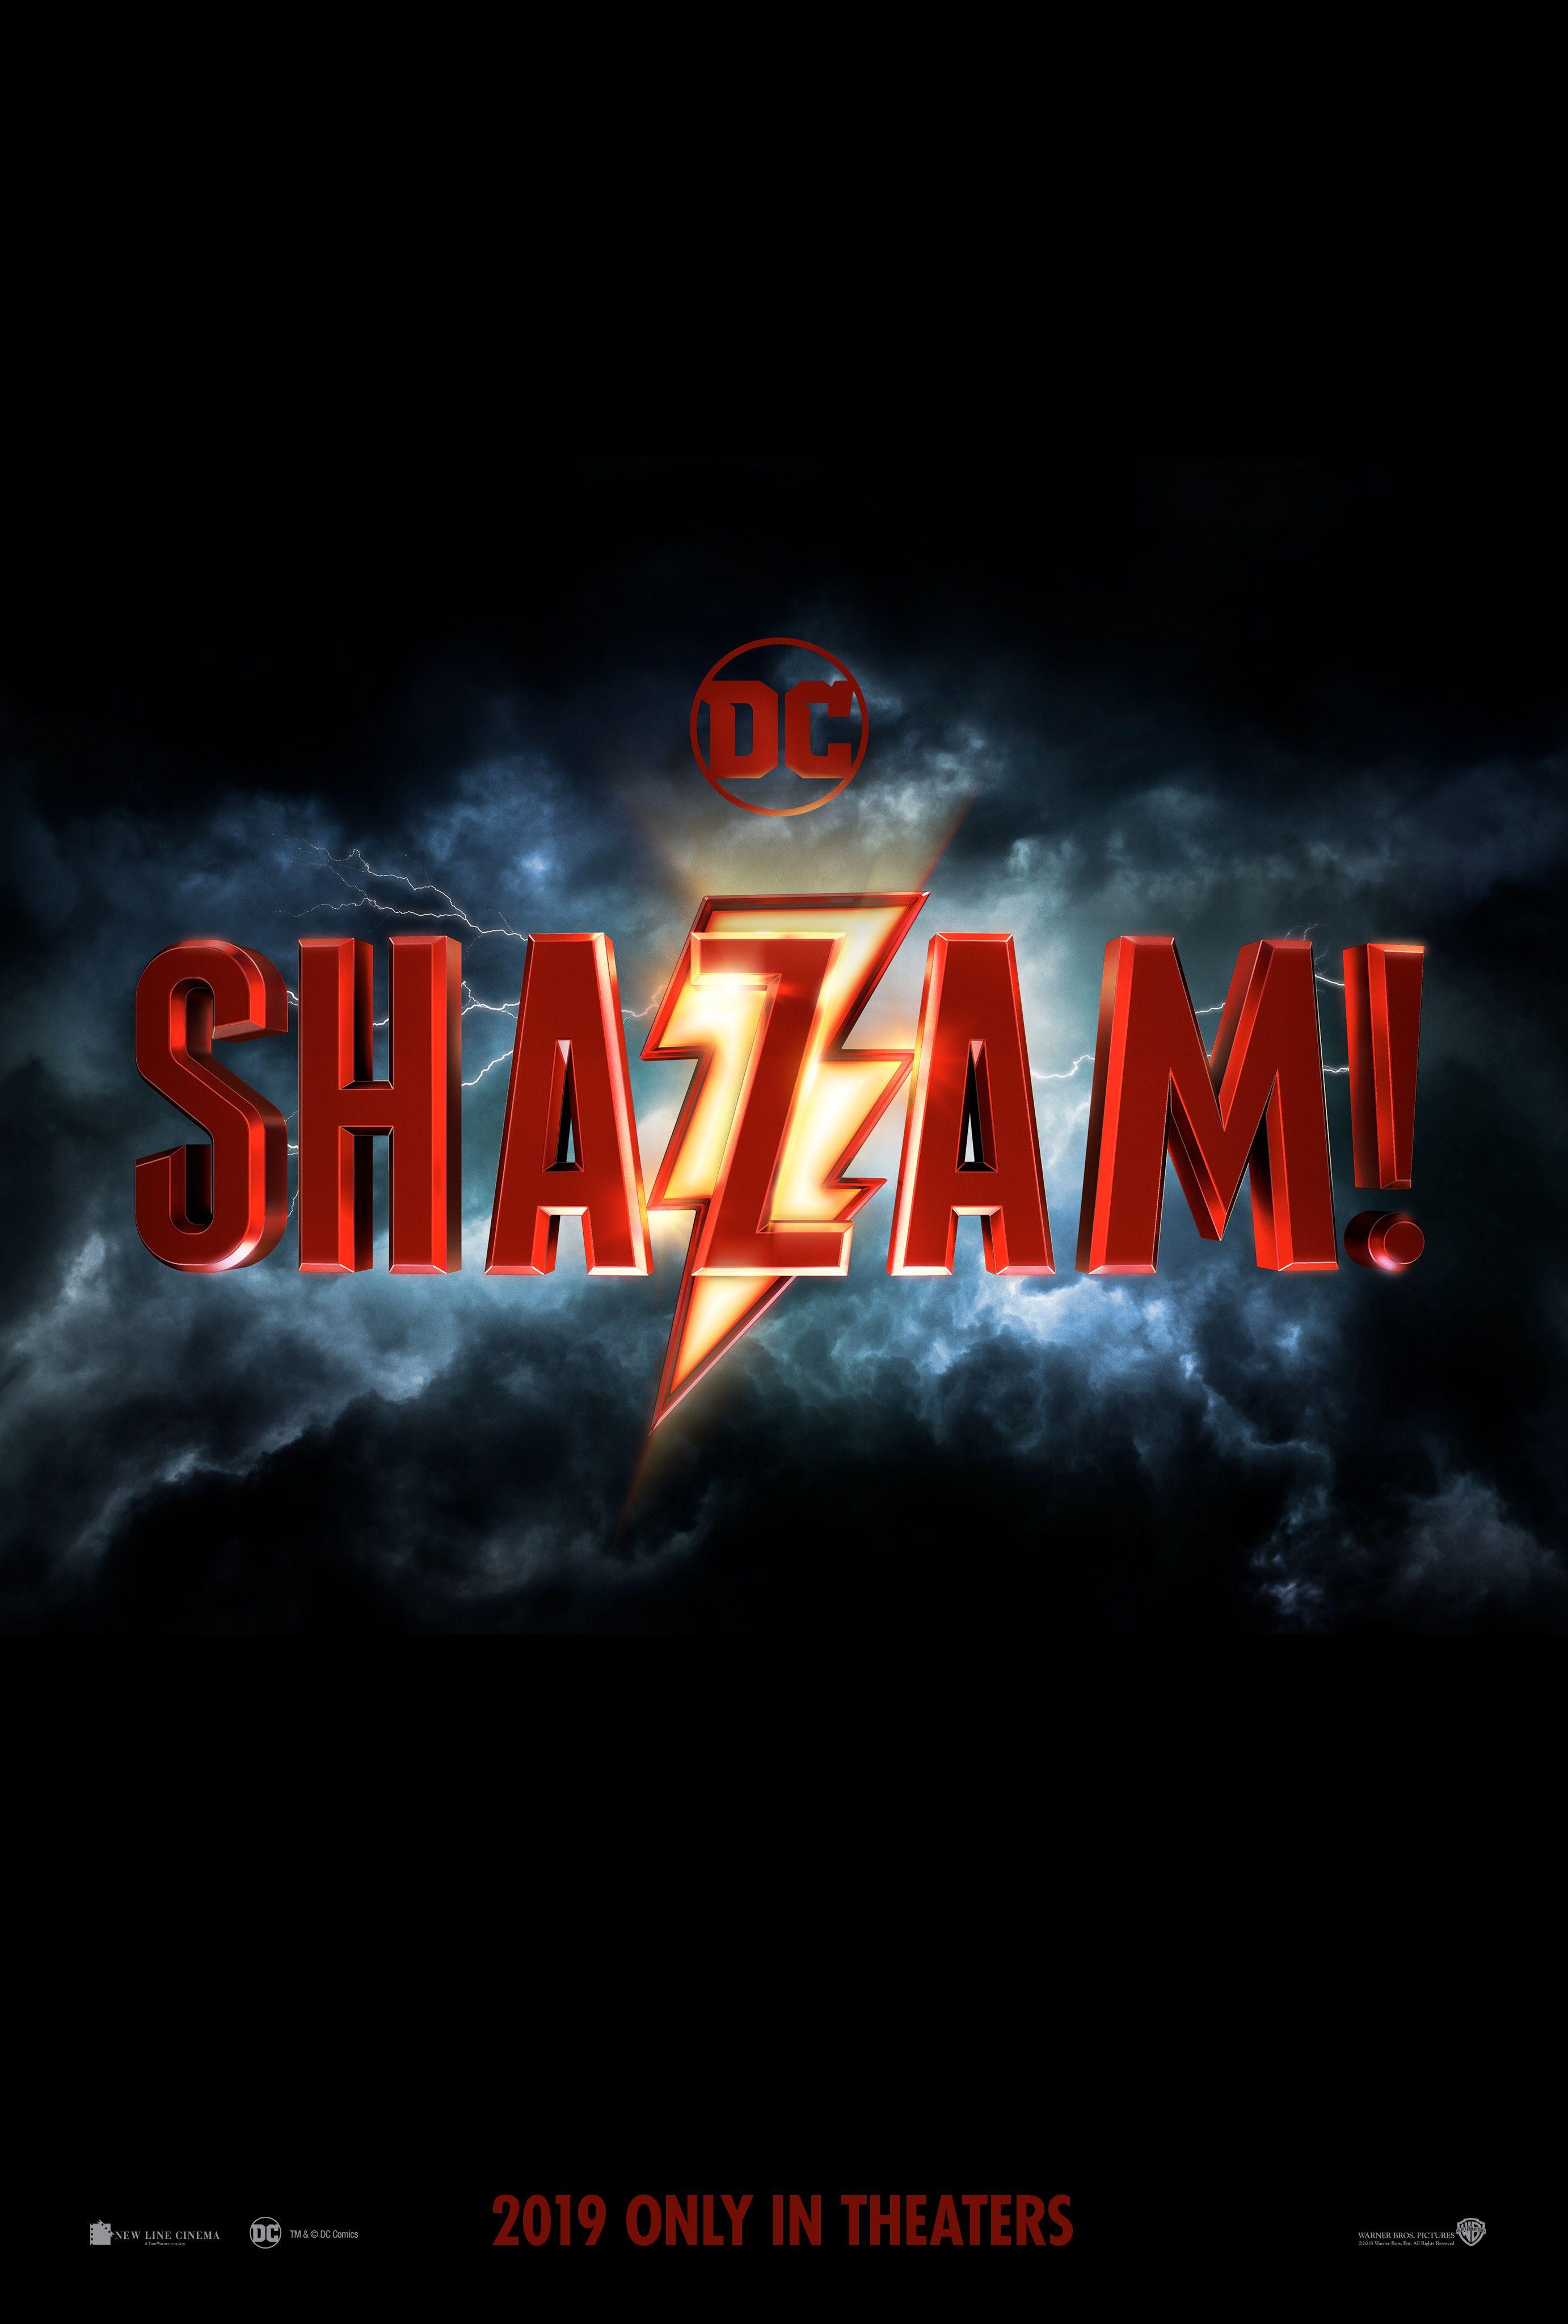 Dceu Logo - Shazam! Movie Logo Reveals New DCEU Film